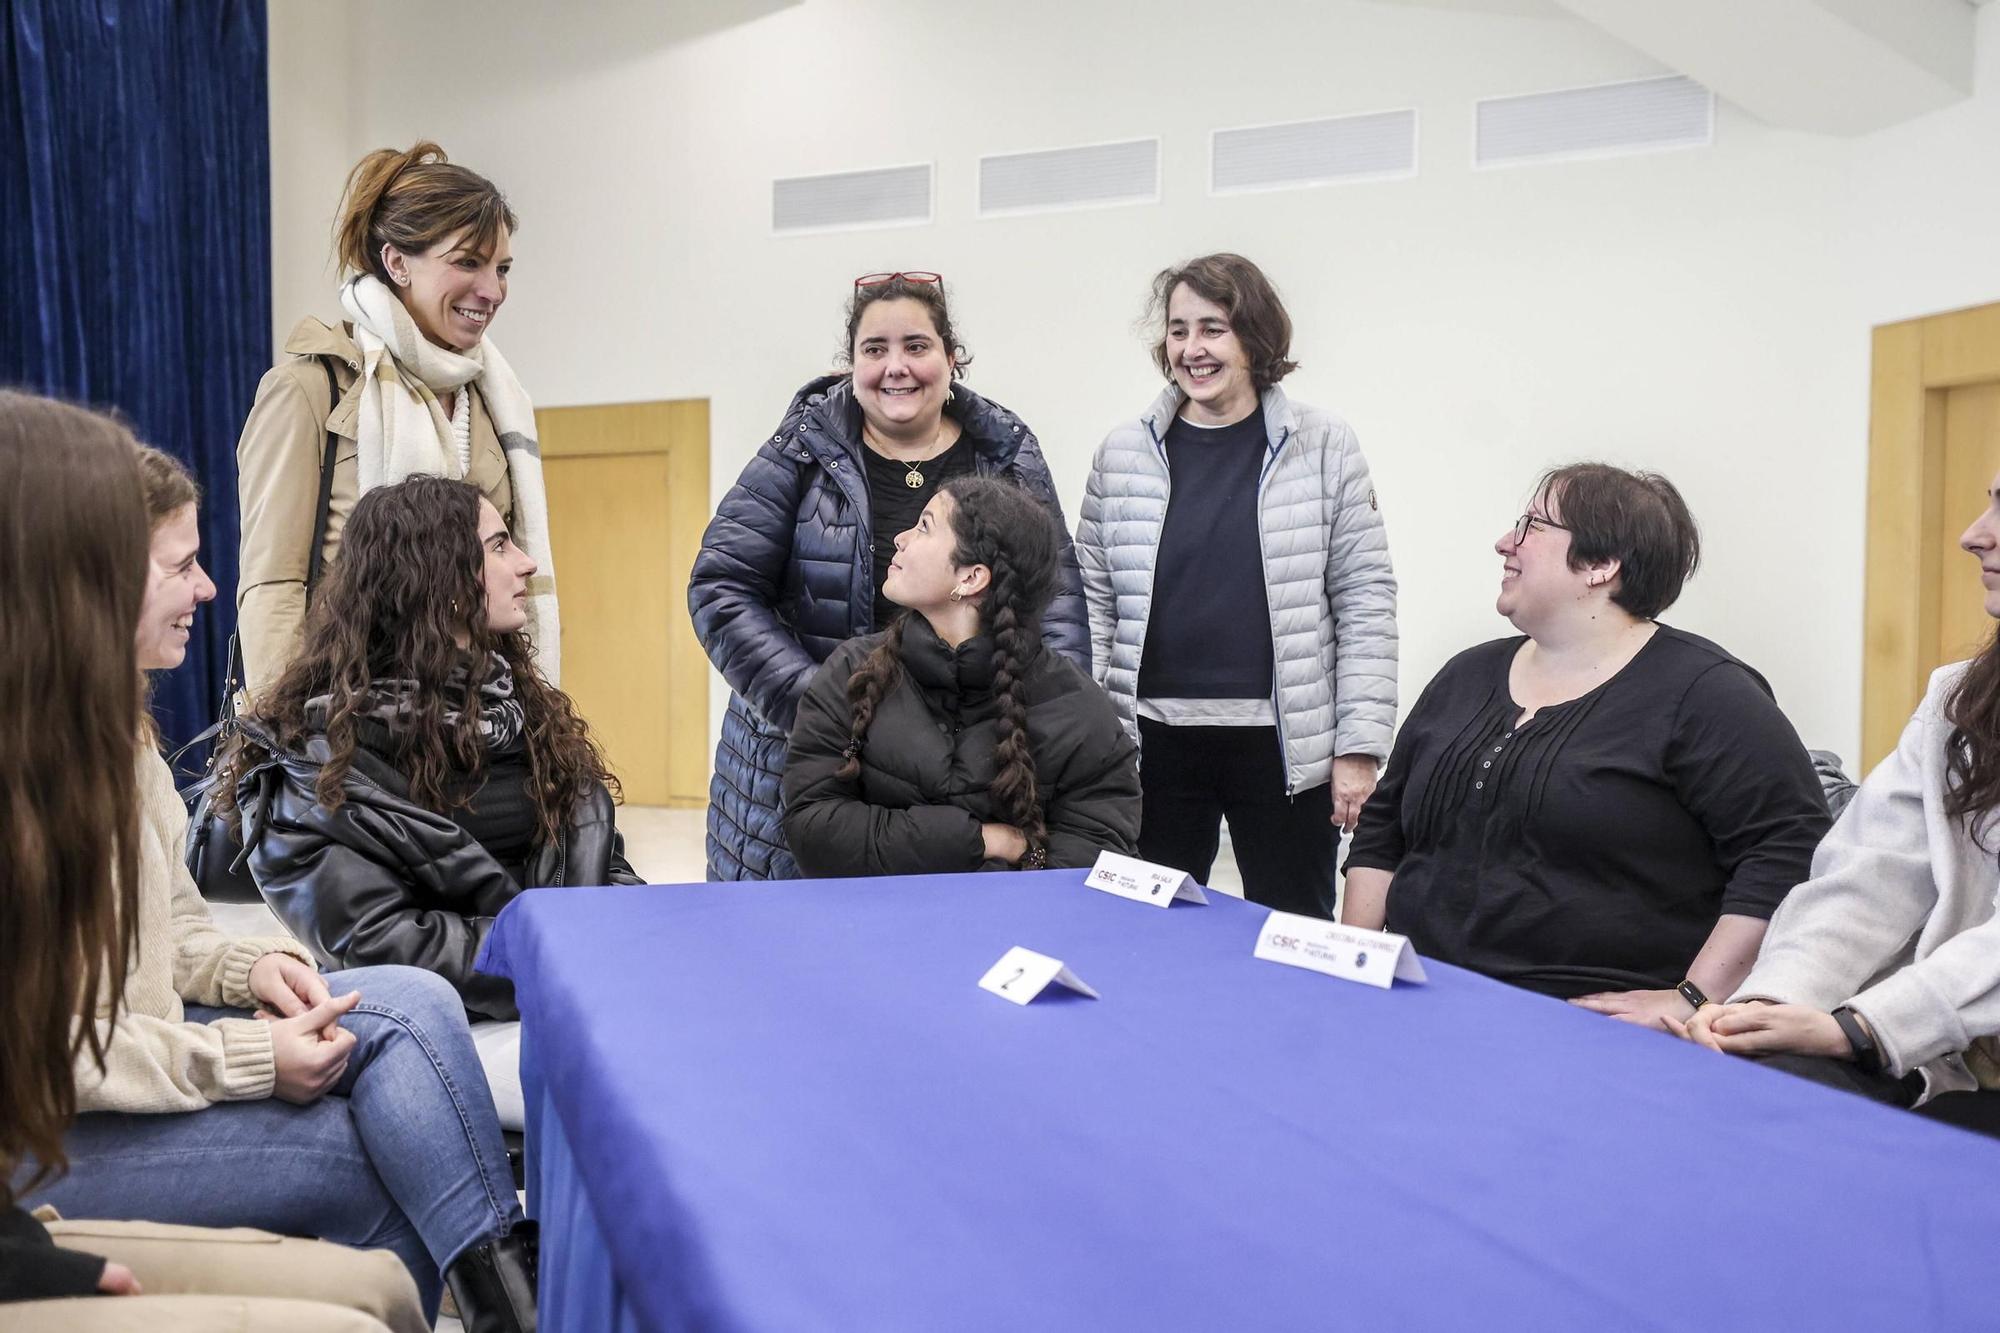 La concejala de Educación, Lourdes García; la vicedirectora del INCAR-CSIC, Teresa Valdés-Solís, y la directora del CSIC, María Fernández, conversan con los estudiantes.